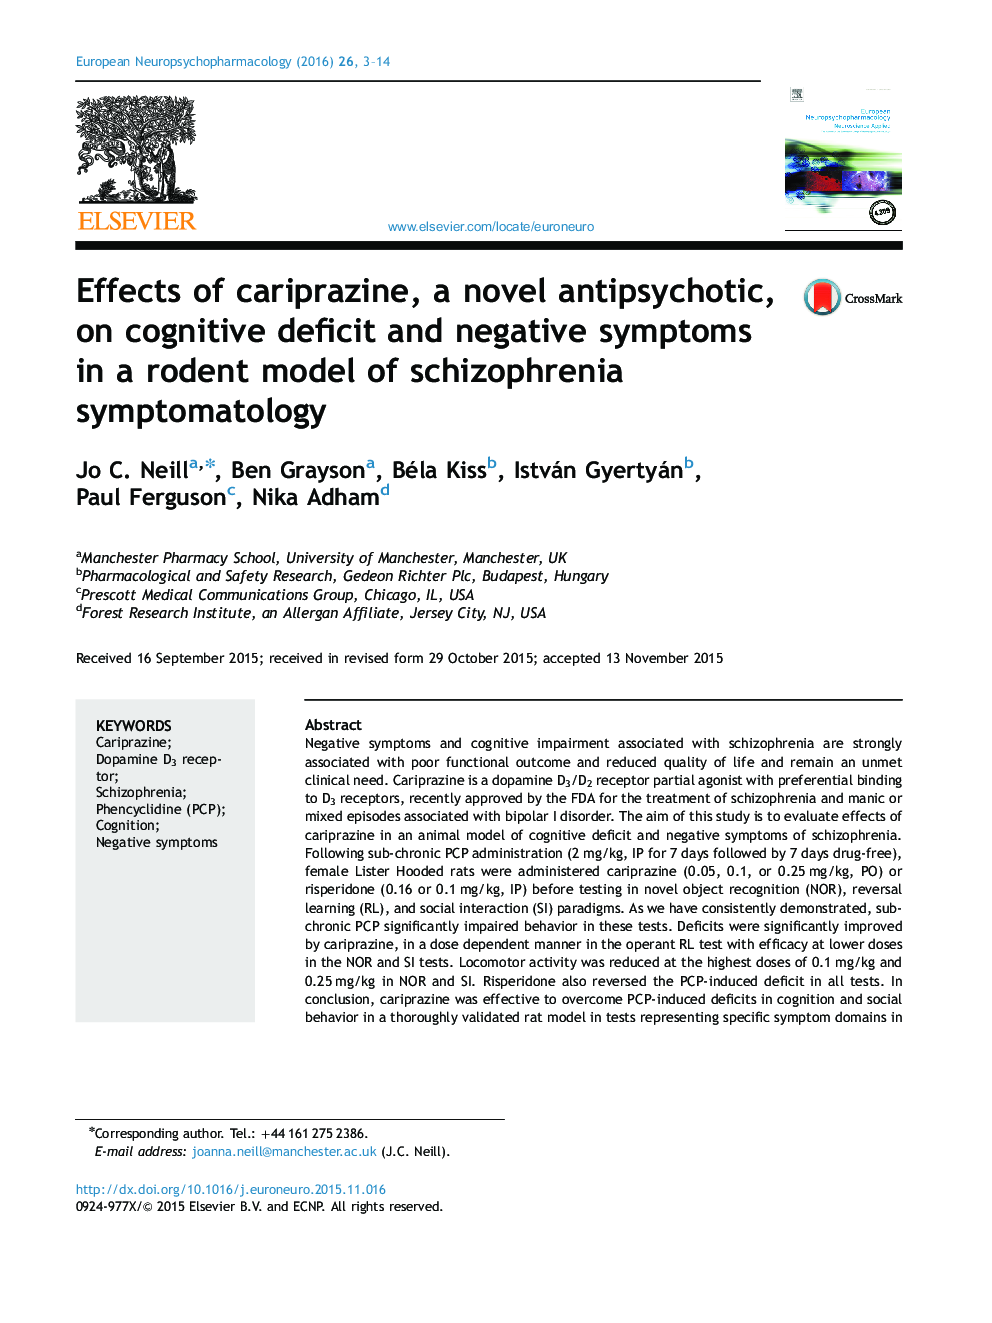 اثرات کایپرازین، ضد روانپریشی جدید بر کمبود شناختی و علائم منفی در یک مدل جوندگان علائم اسکیزوفرنی 